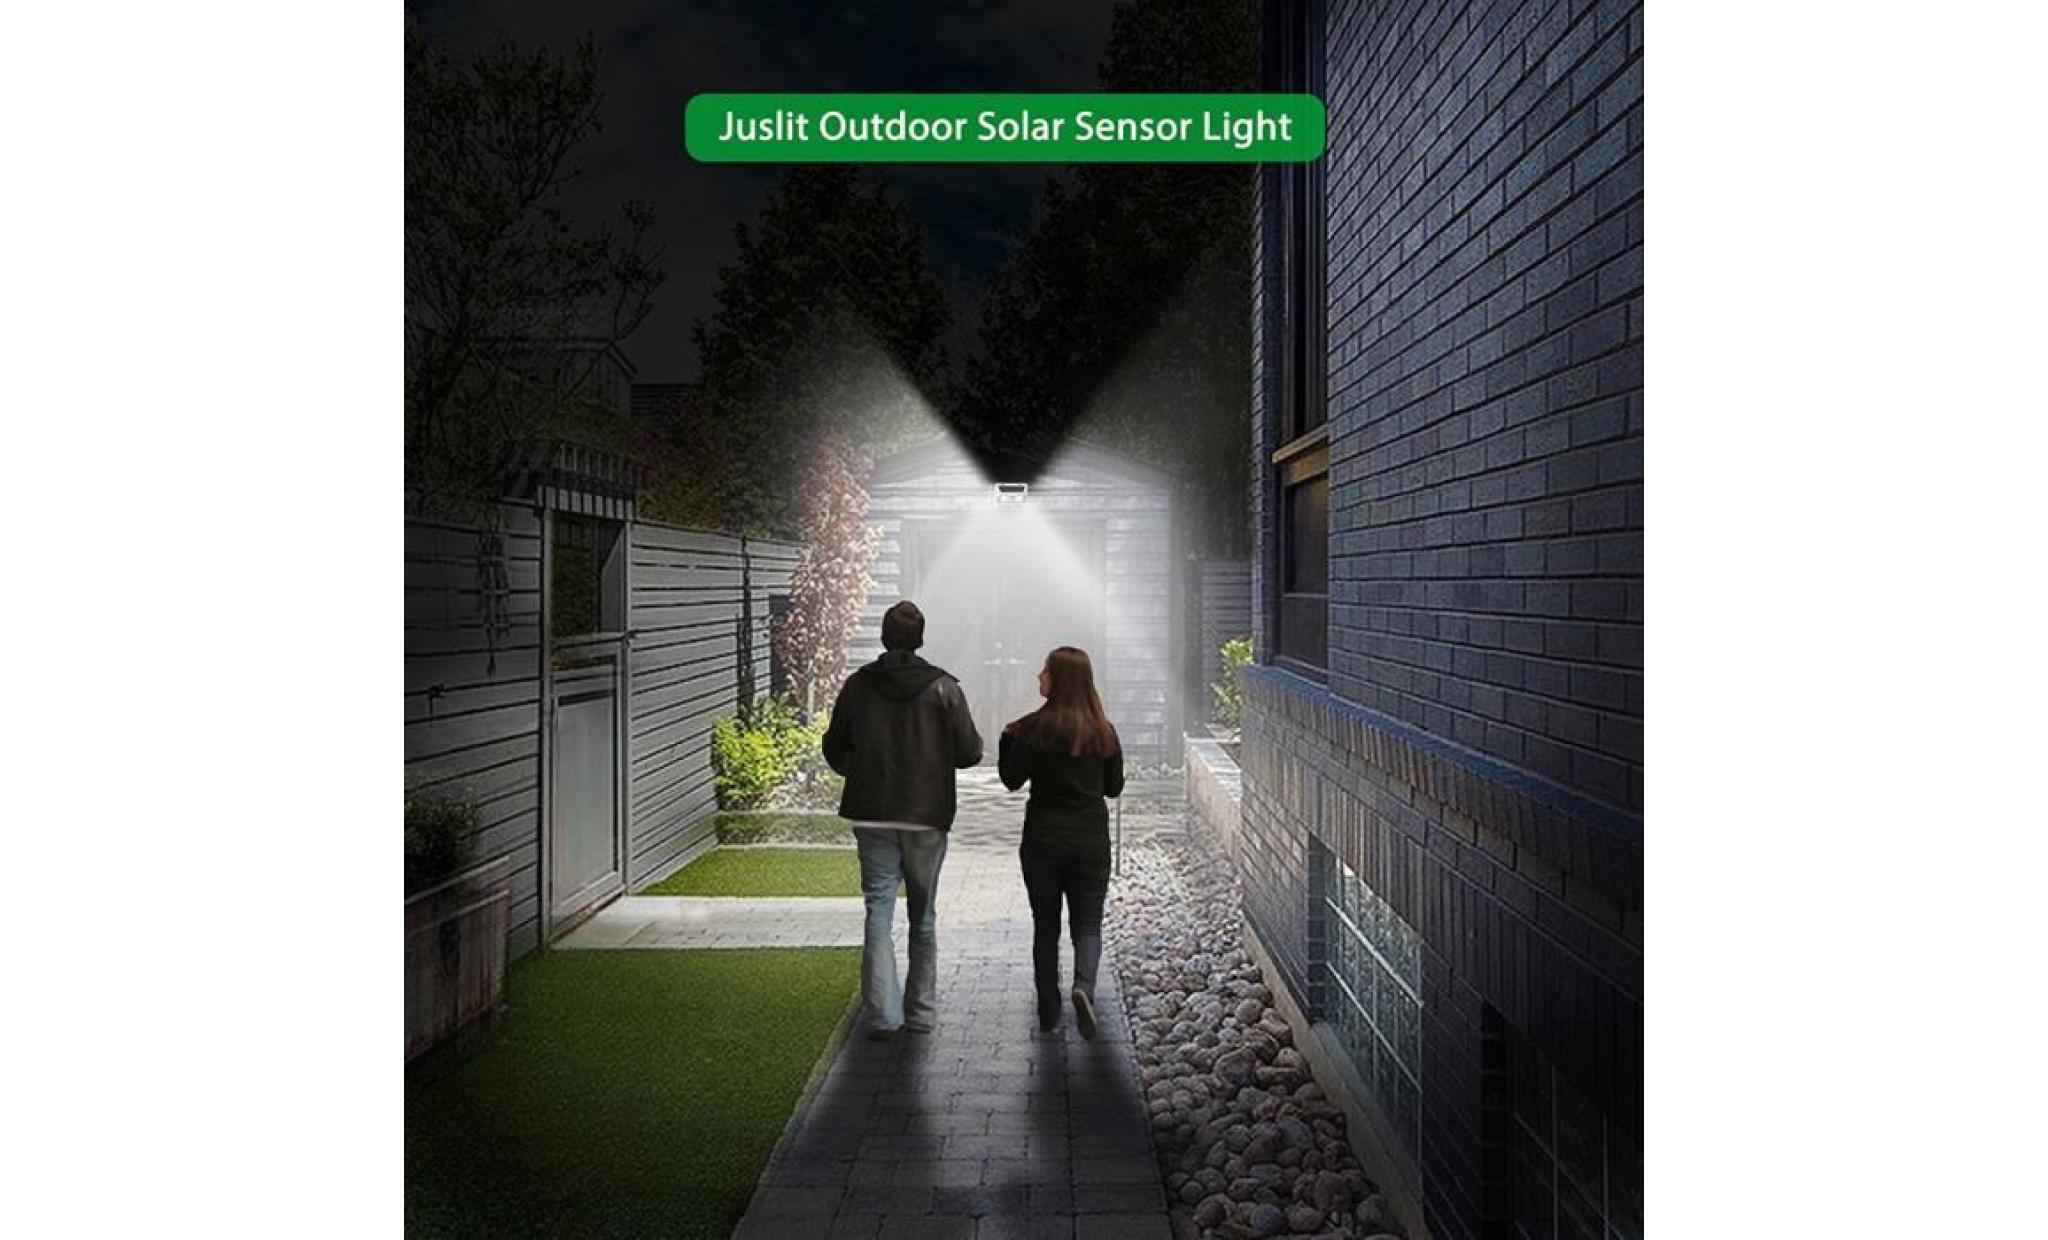 95 smd cob énergie solaire lumière pir motion sensor garden street lampe extérieure li498509 pas cher